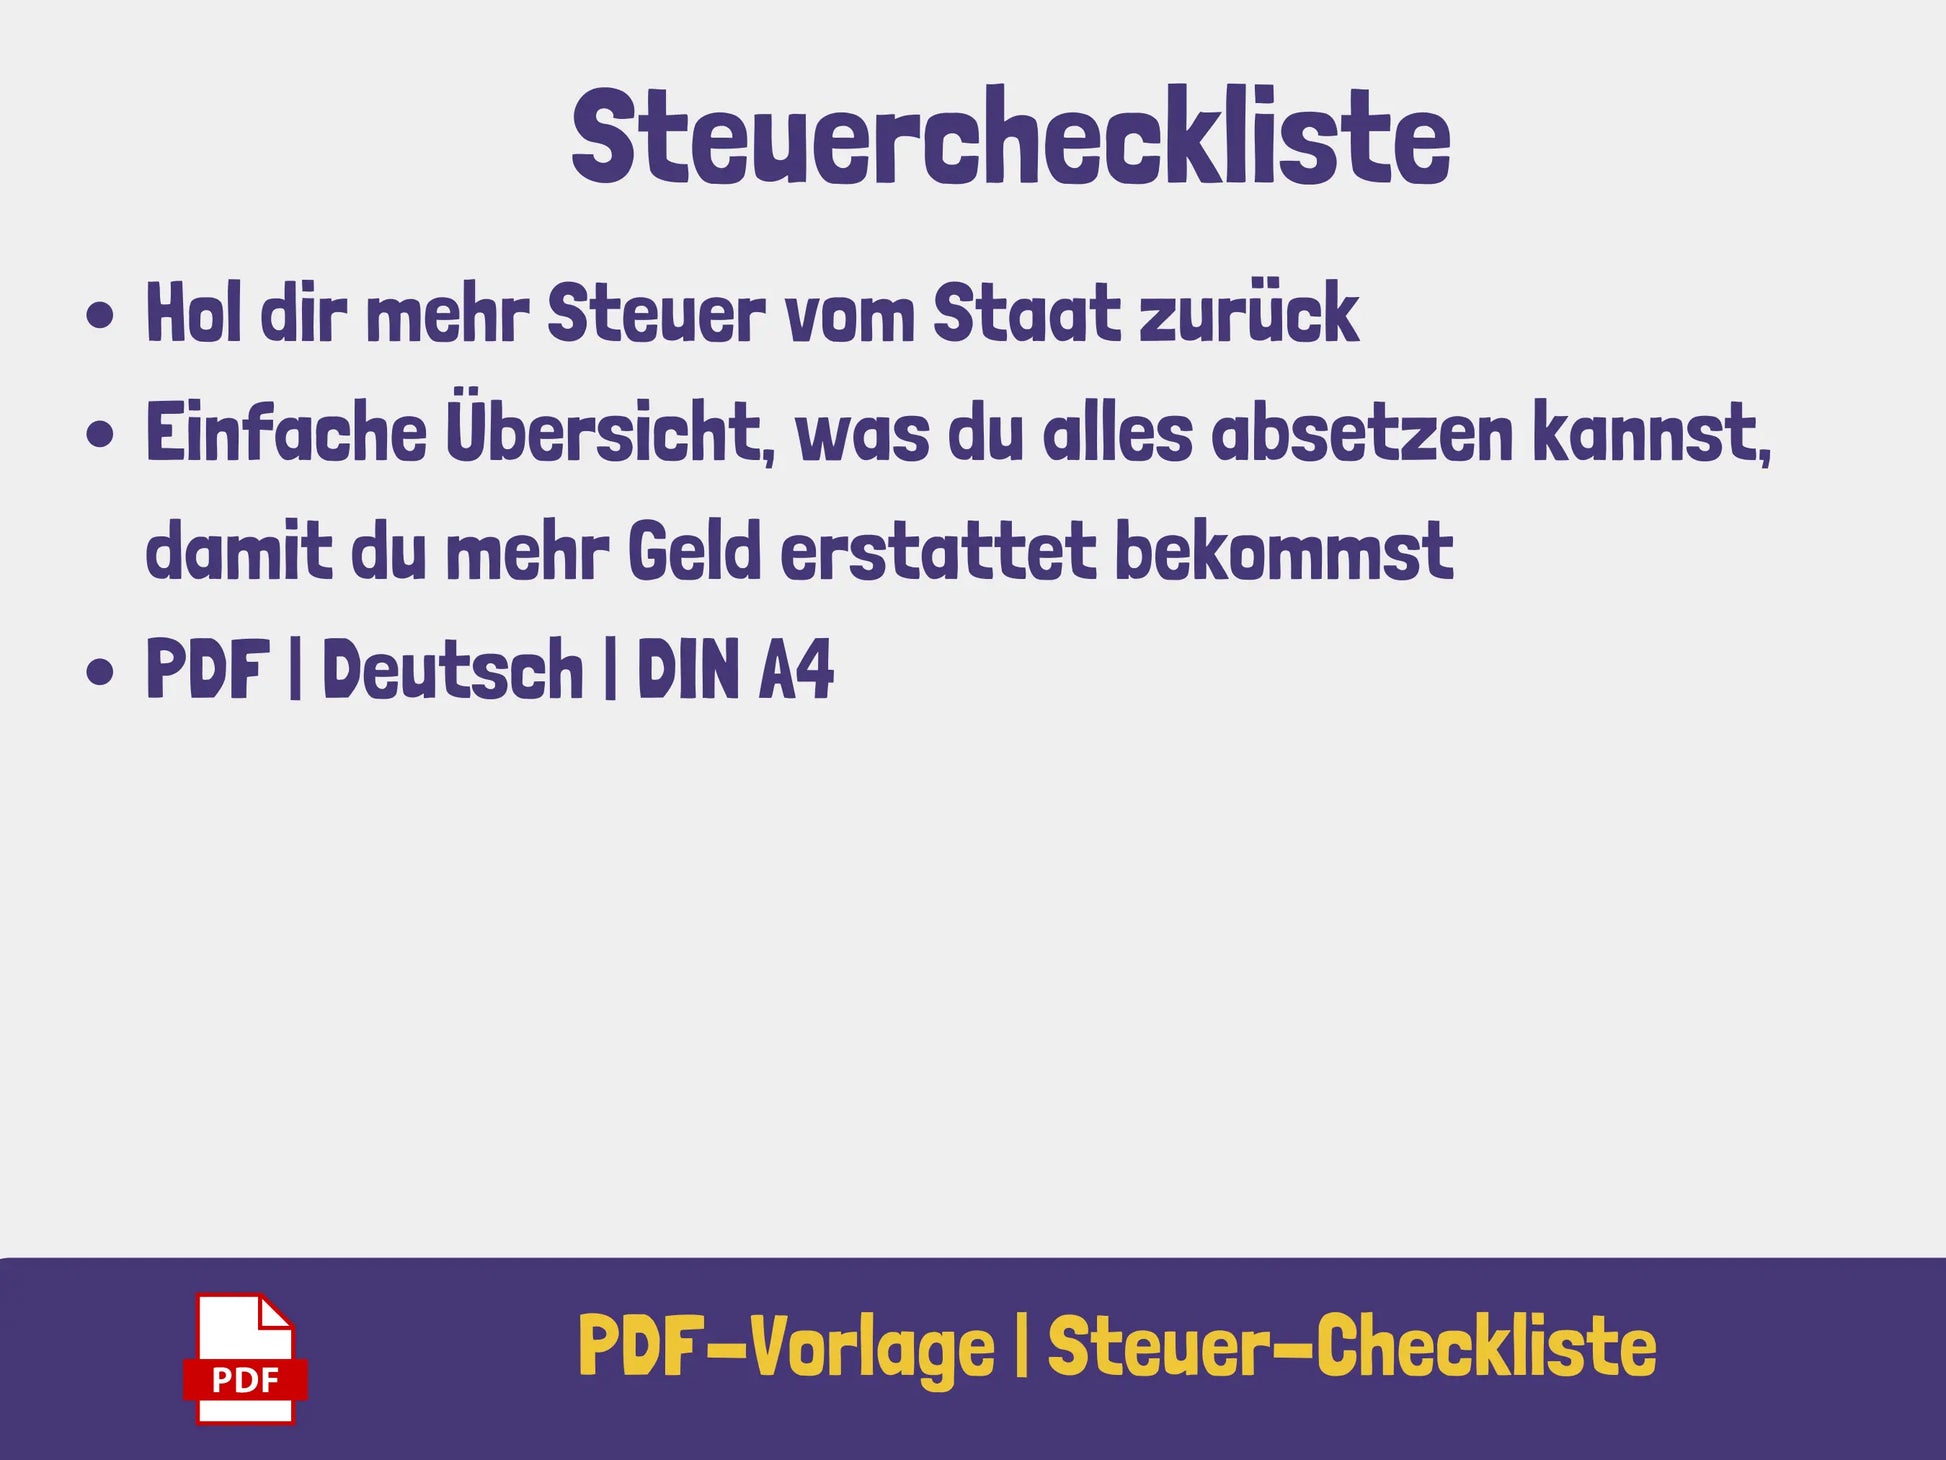 Steuer-Checkliste PDF AndreasJansen Vorlage